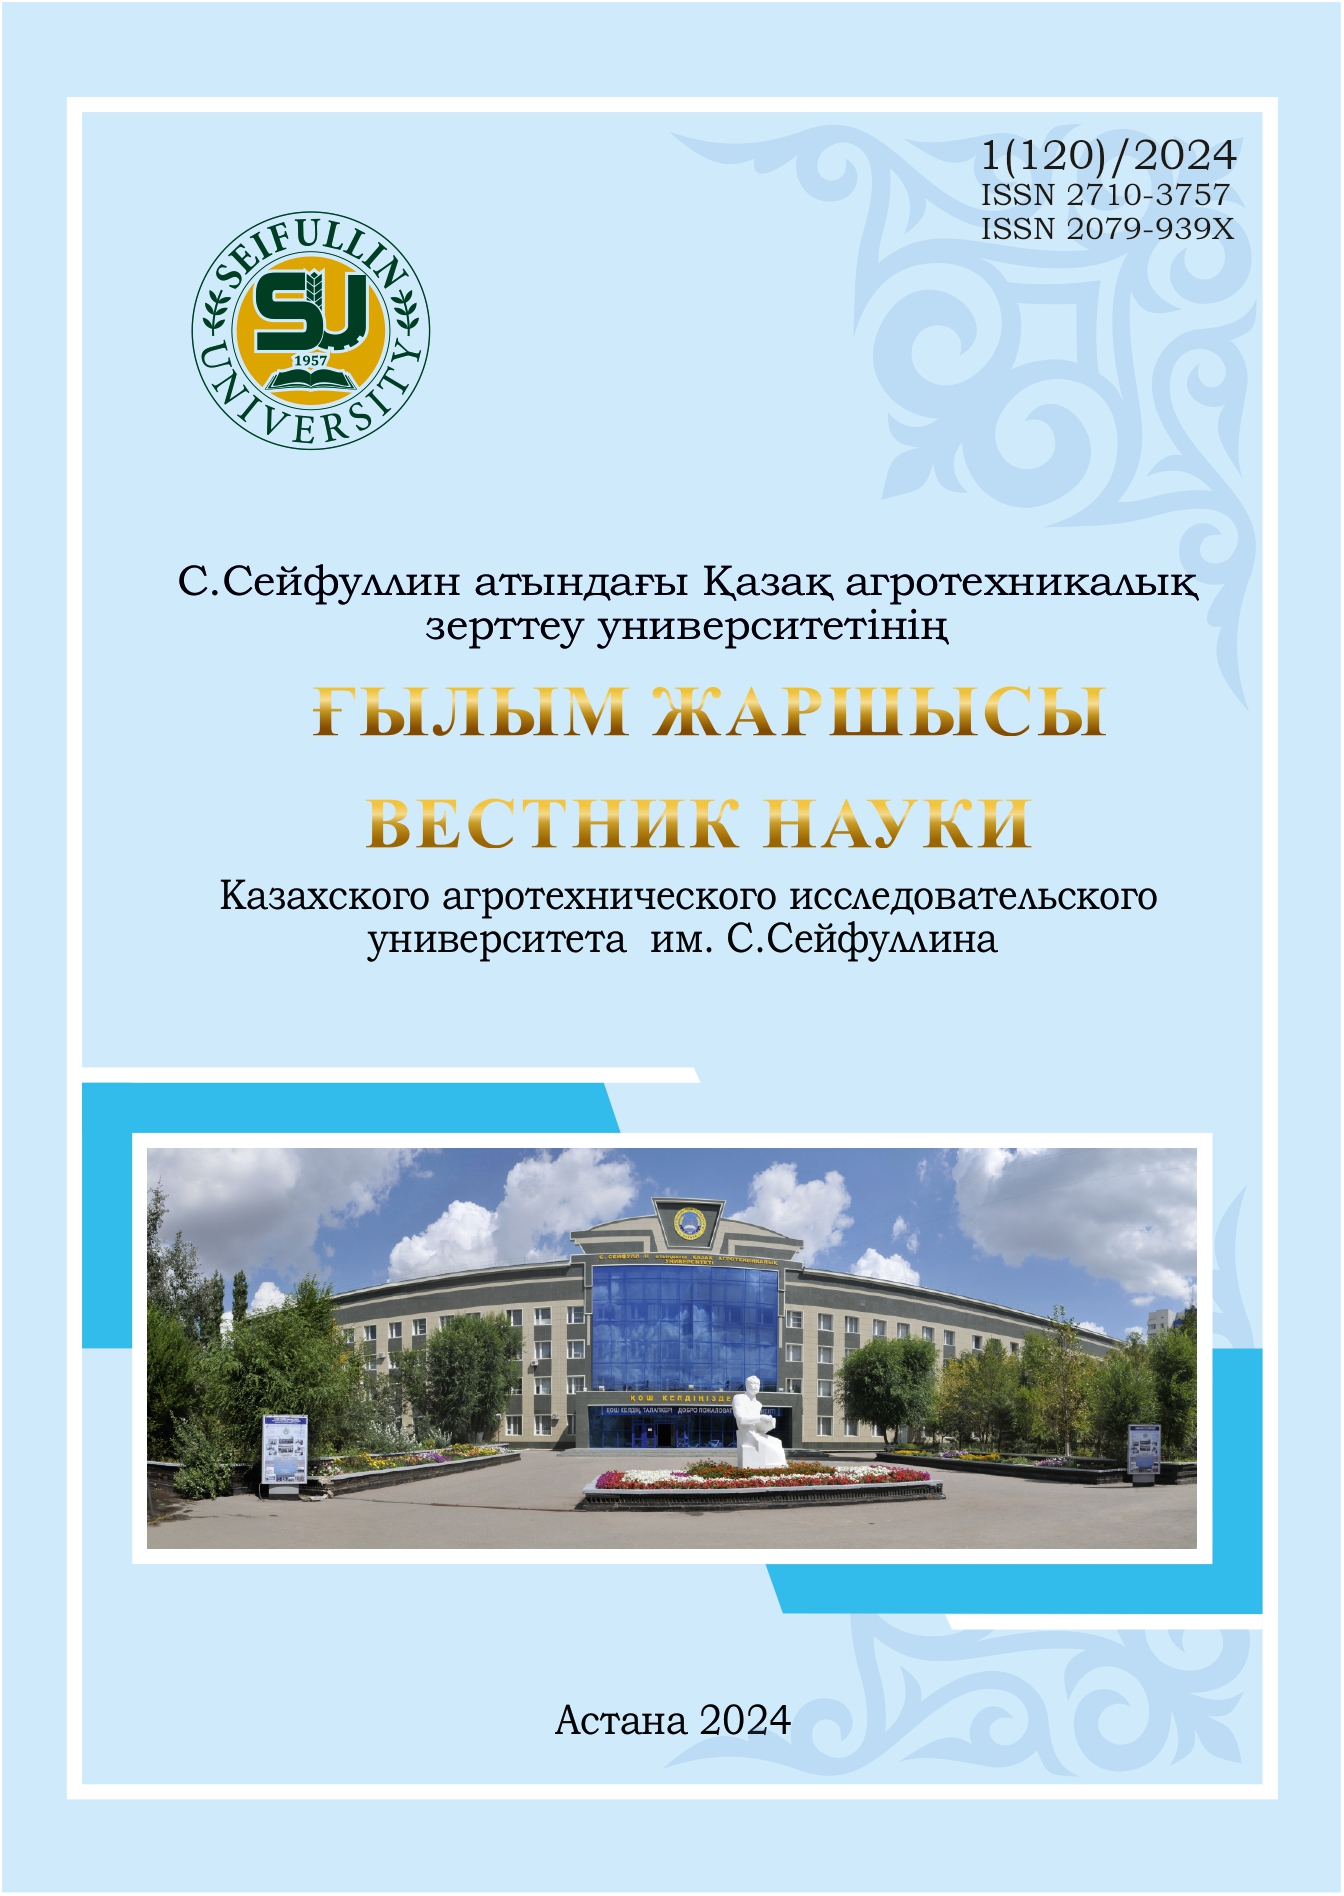 					Показать № 1(120) (2024): Вестник науки Казахского агротехнического исследовательского университета им С. Сейфуллина
				